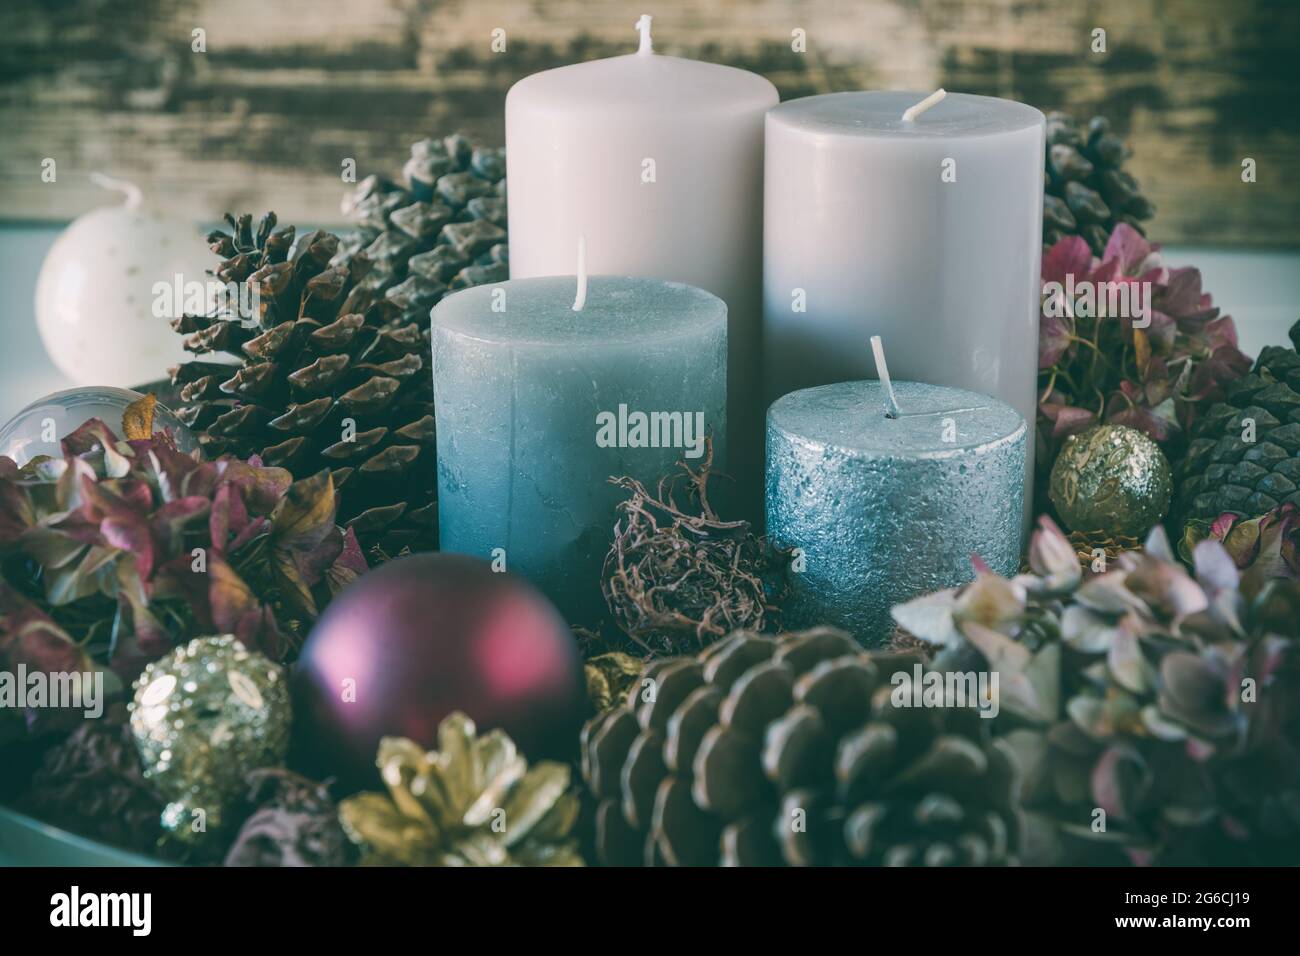 Adventskranz mit vier verschiedenen Kerzen in bunten Farben und natürlicher  Dekoration Stockfotografie - Alamy